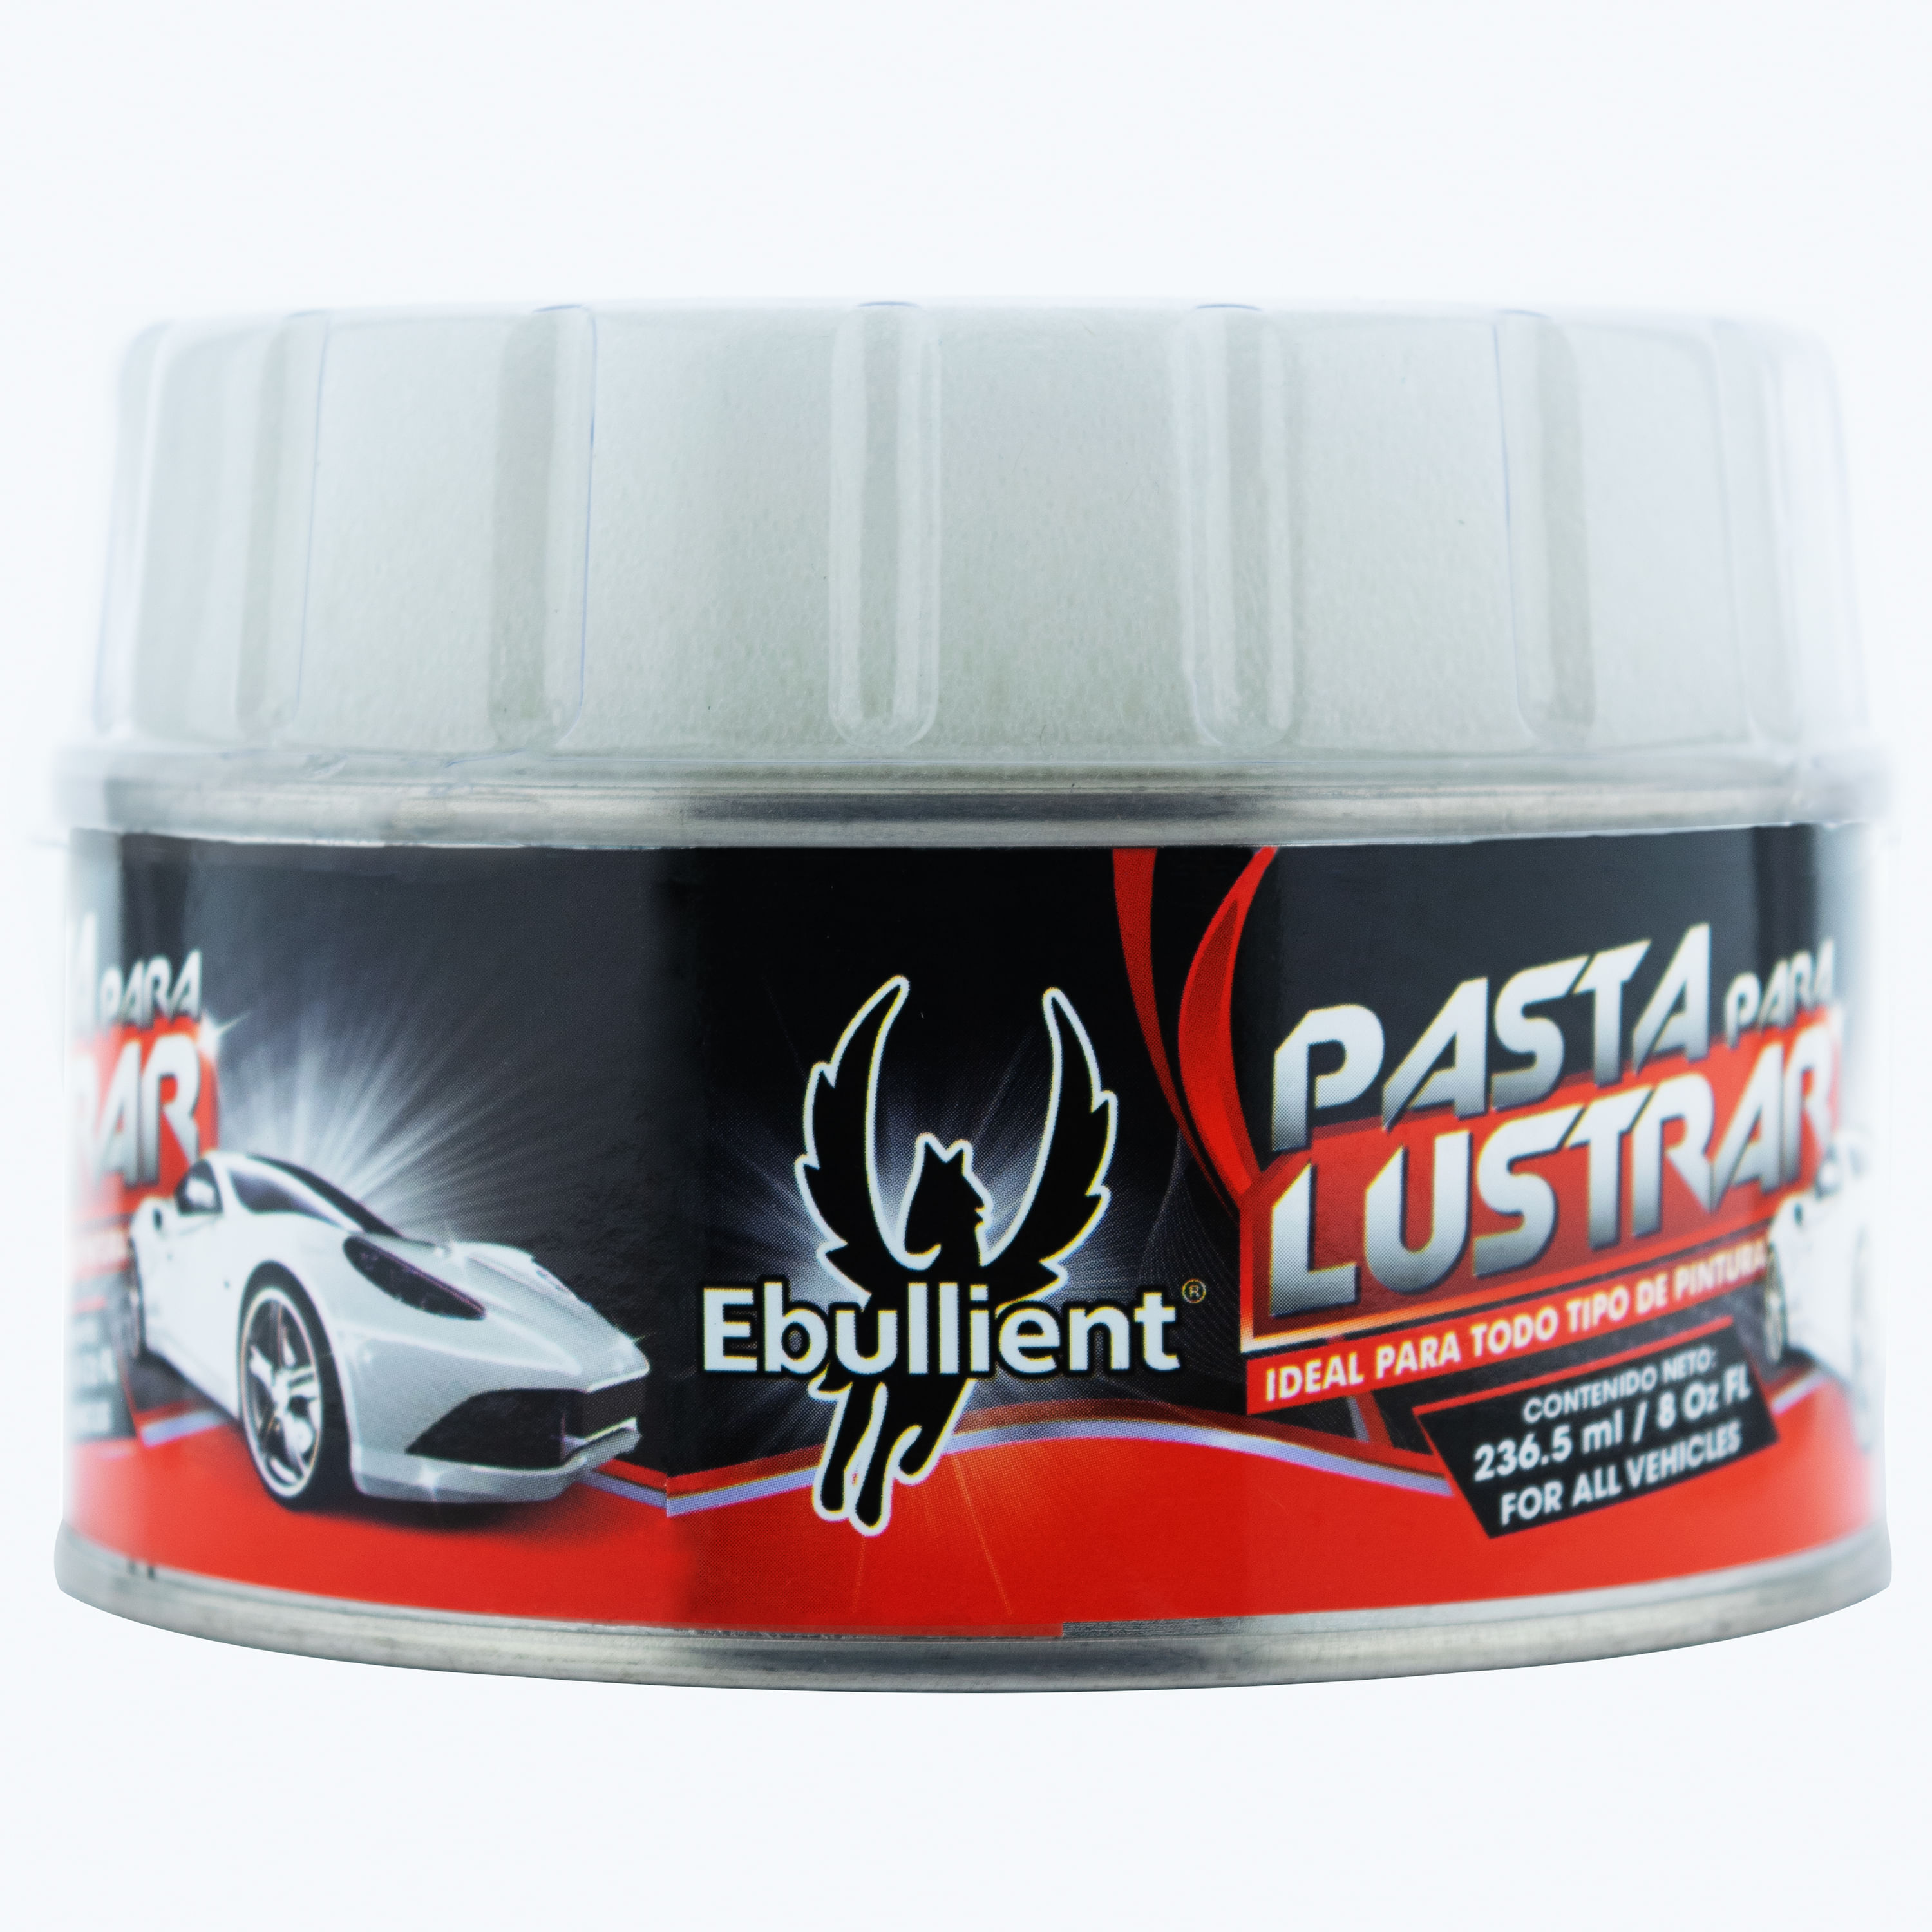 El cuarto tomar el pelo marcador Comprar Pasta Para Lustrar Tarro Ebullient - 240Ml | Walmart El Salvador